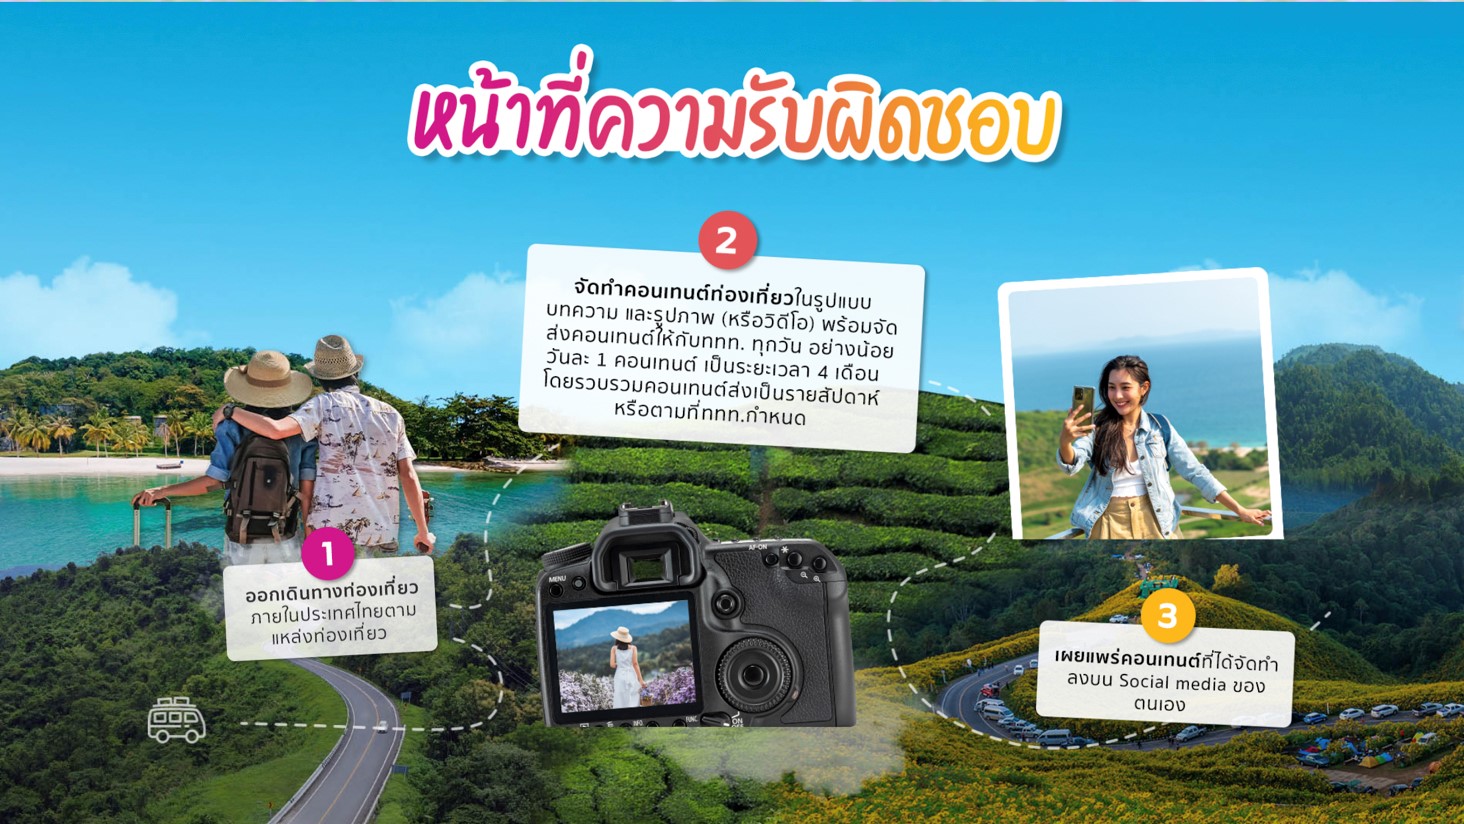 ททท. เปิดรับสมัคร “นักท่องเที่ยวแห่งประเทศไทย” ให้เงิน 5 แสน ไปเที่ยว 4 เดือน